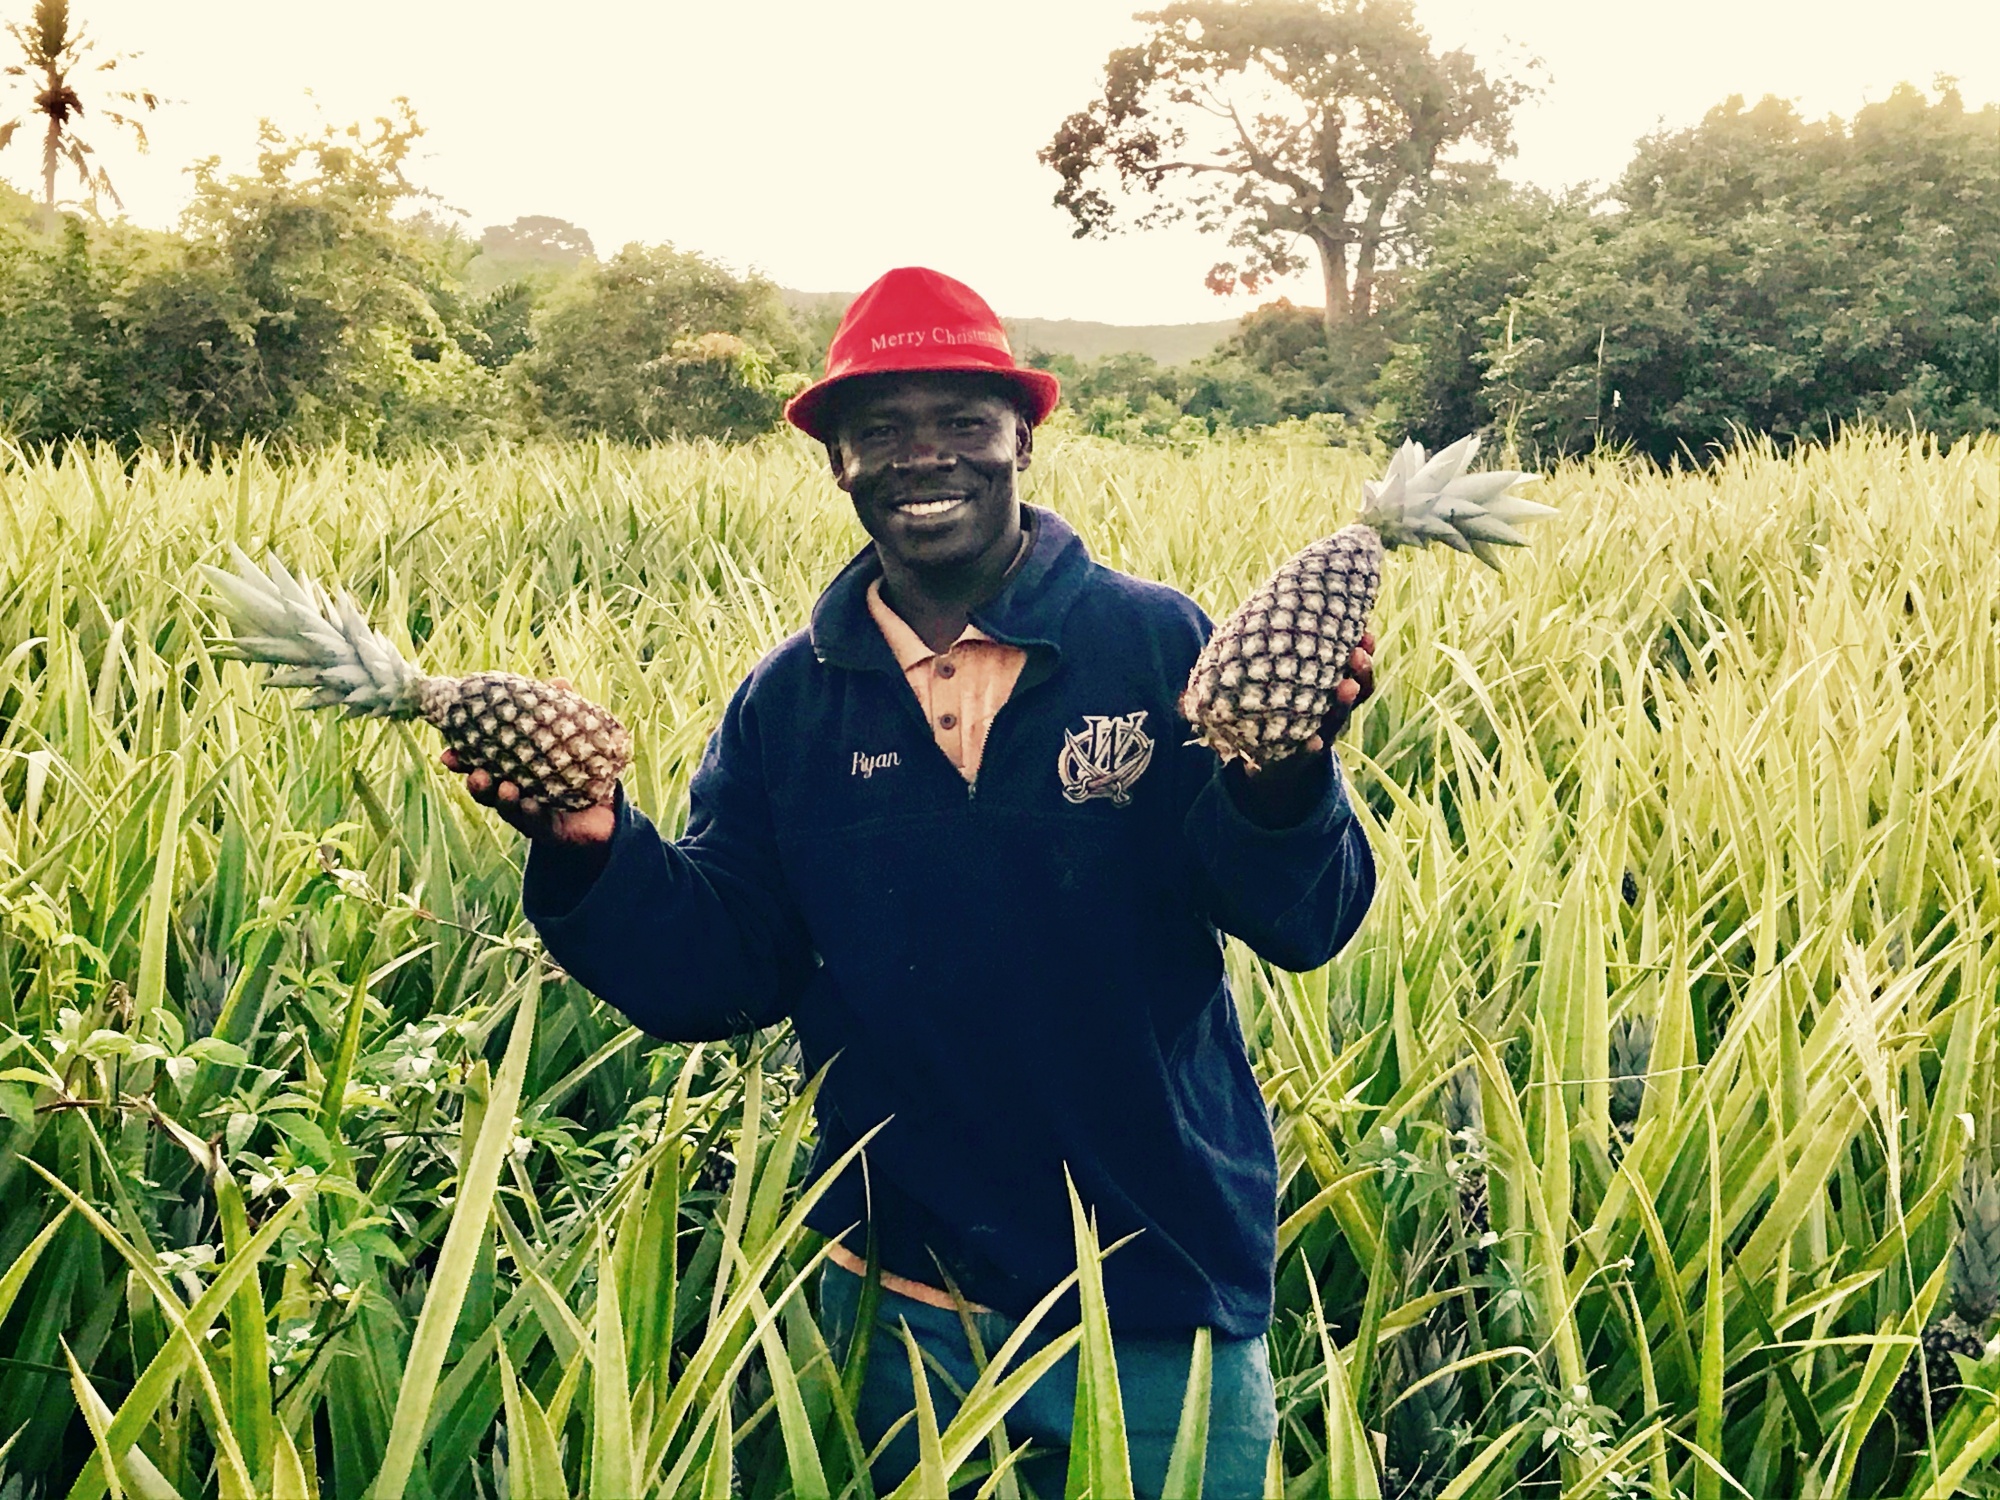 Albert Heijn treft schikking met Ghanese ananasboer na onrechtmatig gebruik van zijn beeltenis